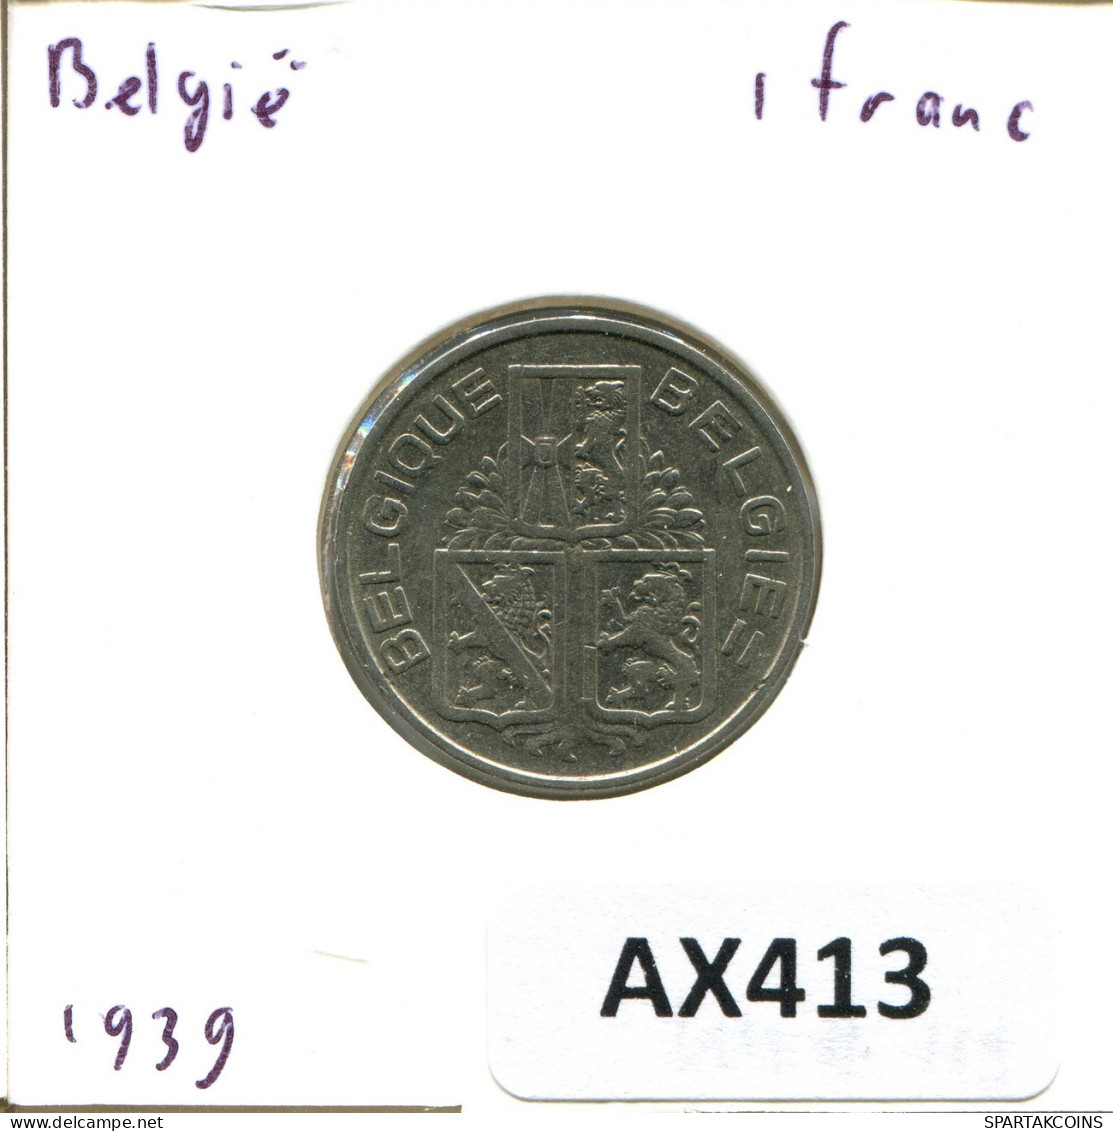 1 FRANC 1939 BÉLGICA BELGIUM Moneda BELGIE-BELGIQUE #AX413.E.A - 1 Franc